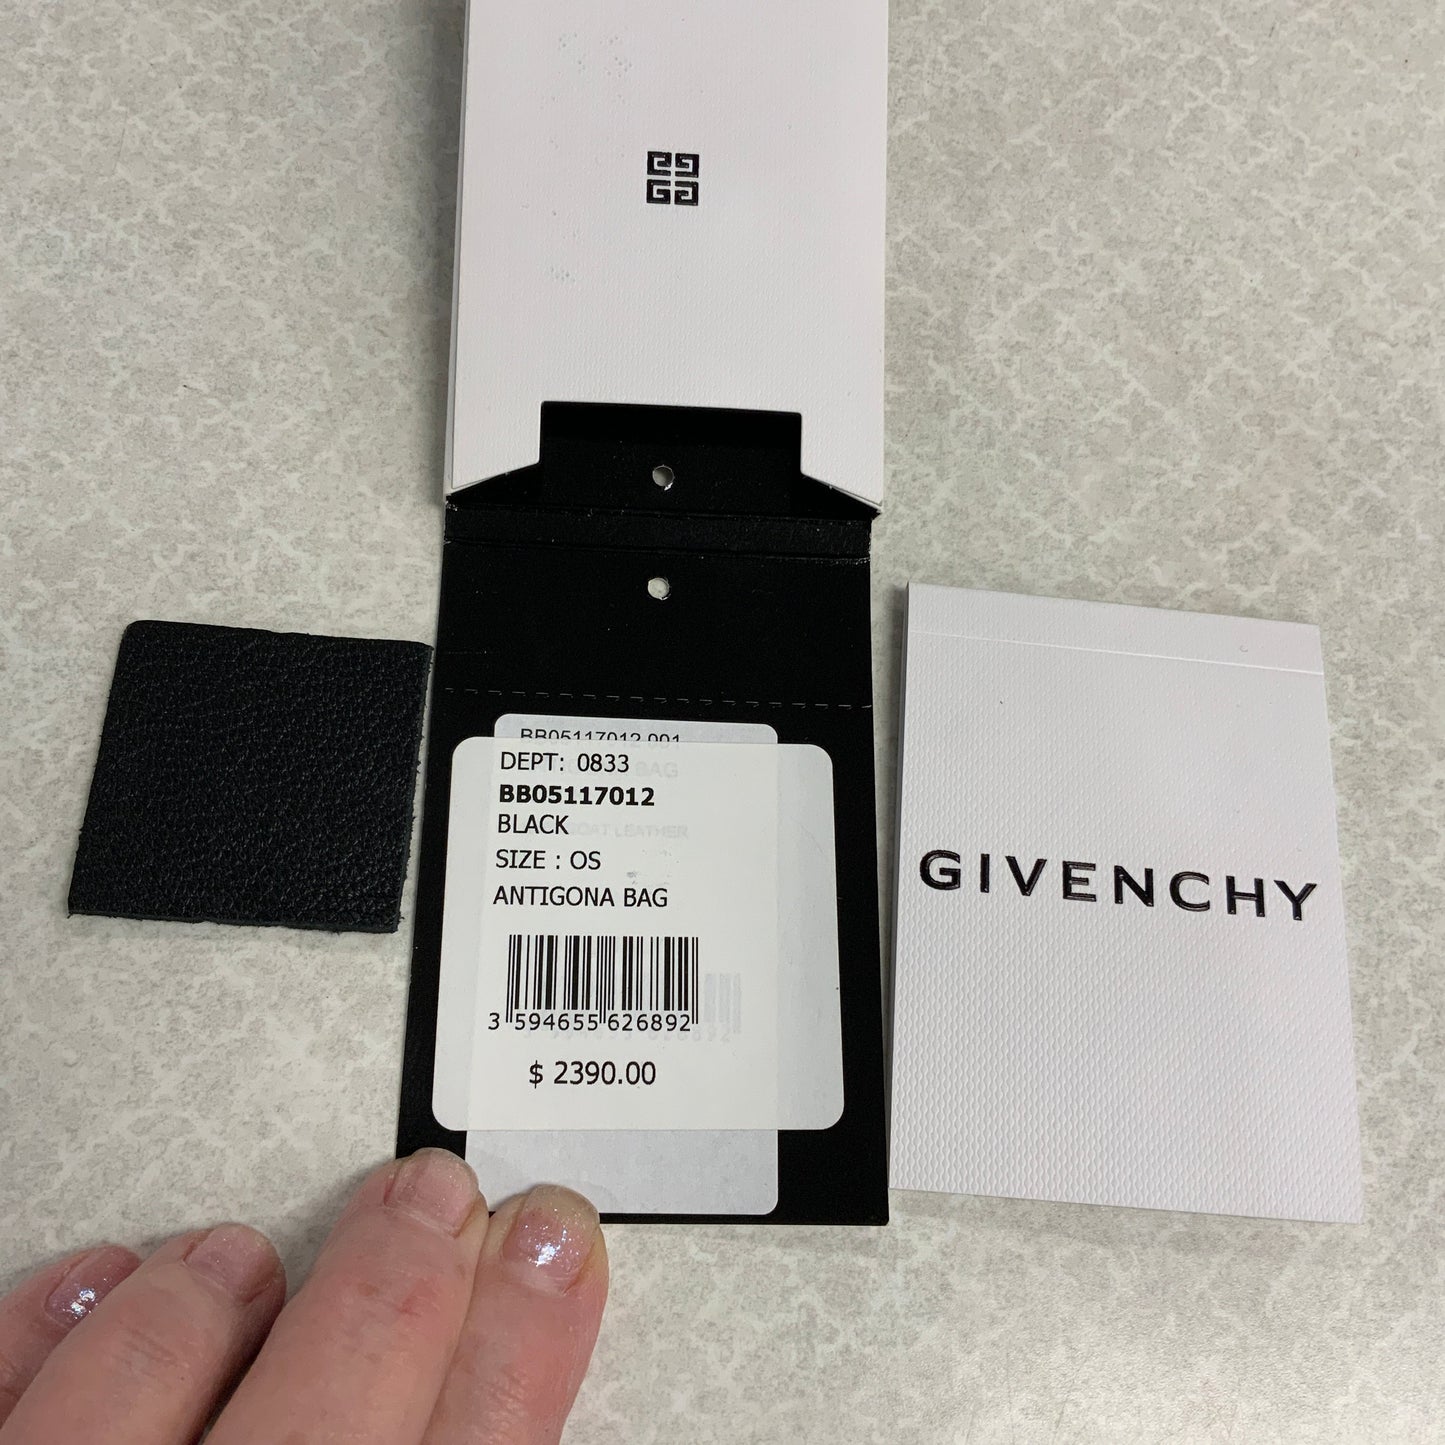 Handbag Luxury Designer By Givenchy  Size: Large